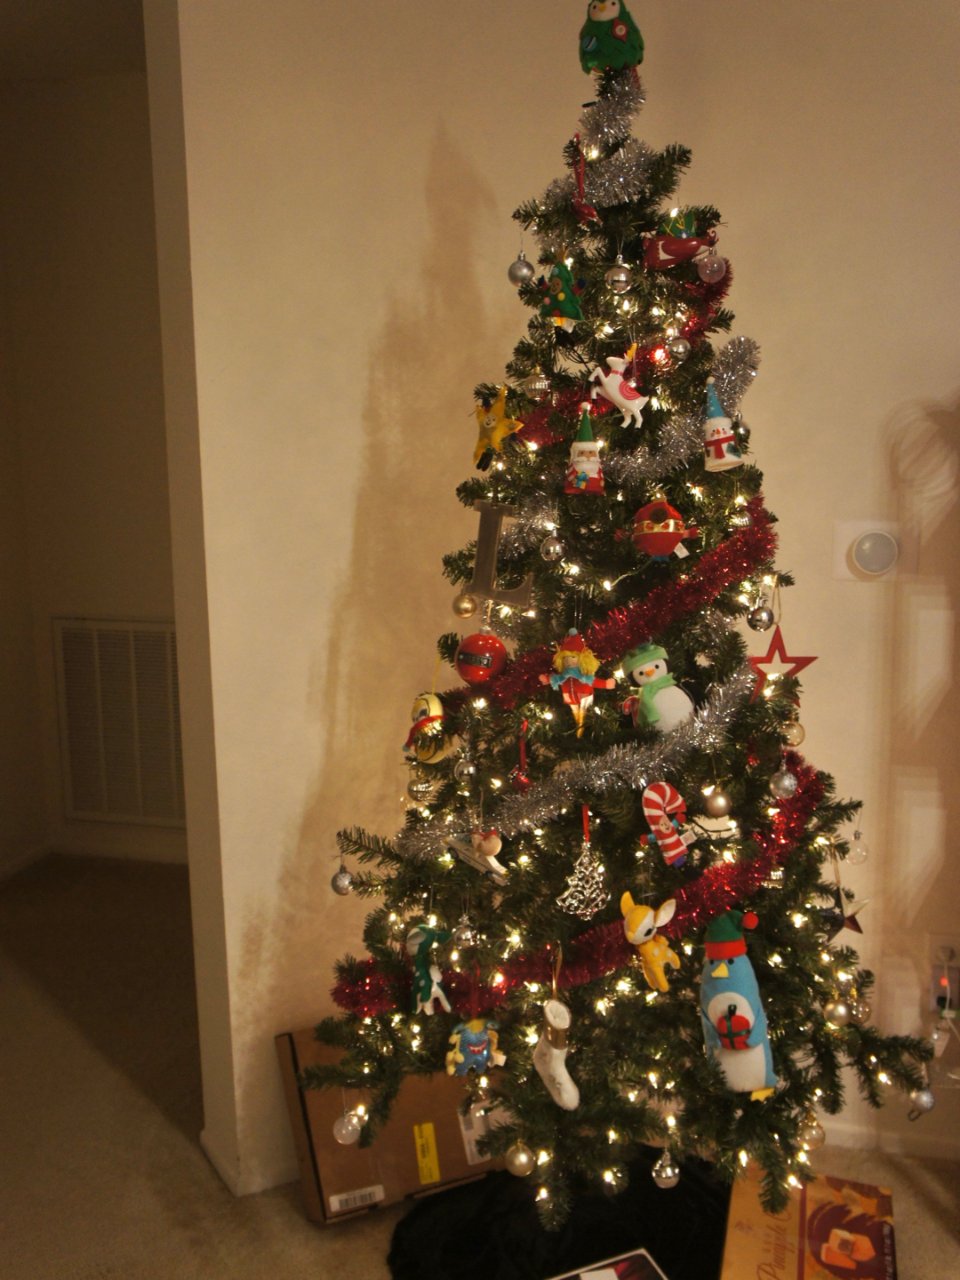 沃尔玛带灯圣诞树6.5',Walmart 沃尔玛,生活要有仪式感